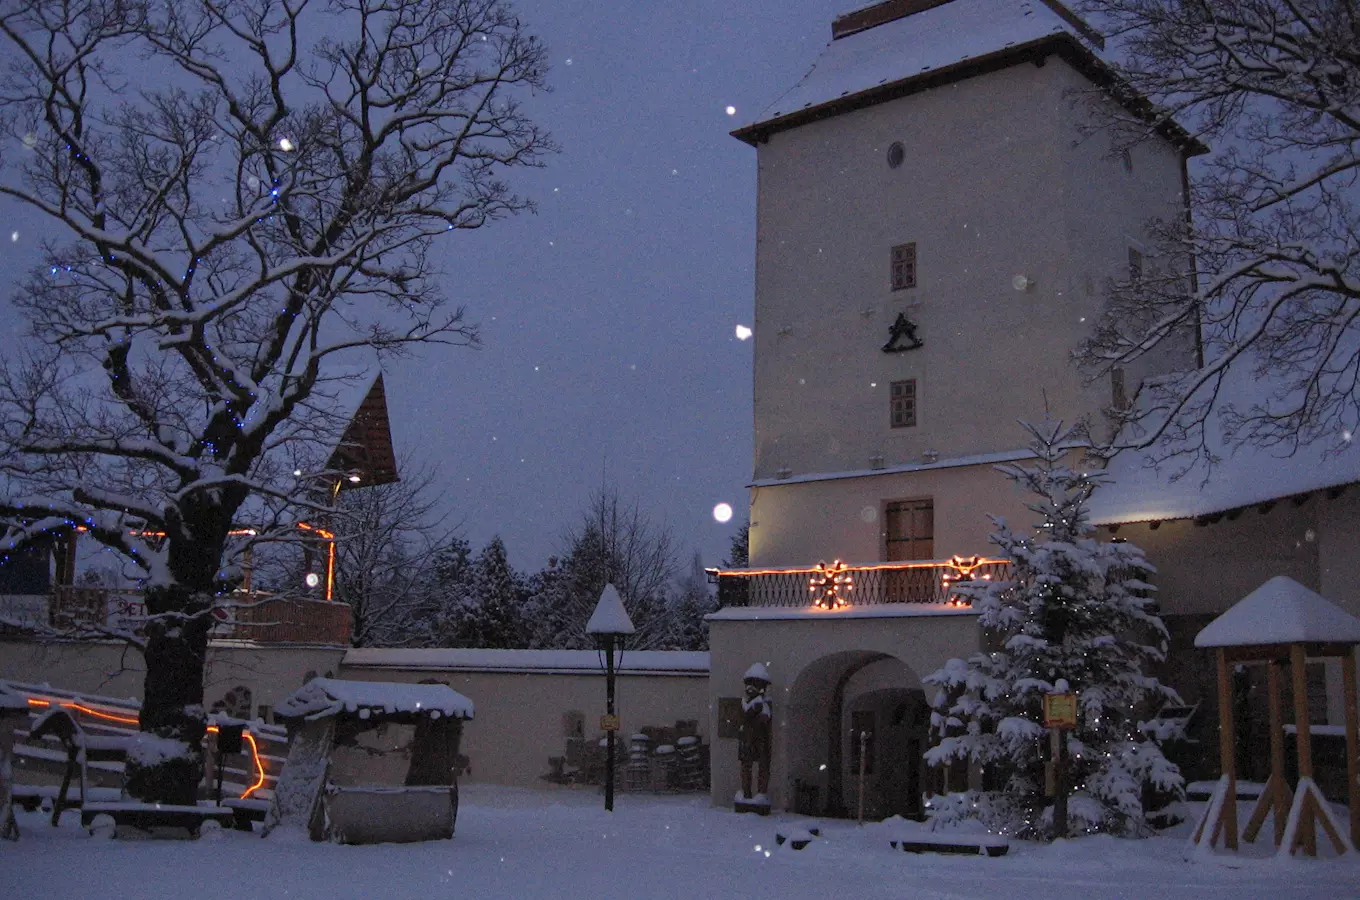 Vánoce na Slezskoostravském hradě